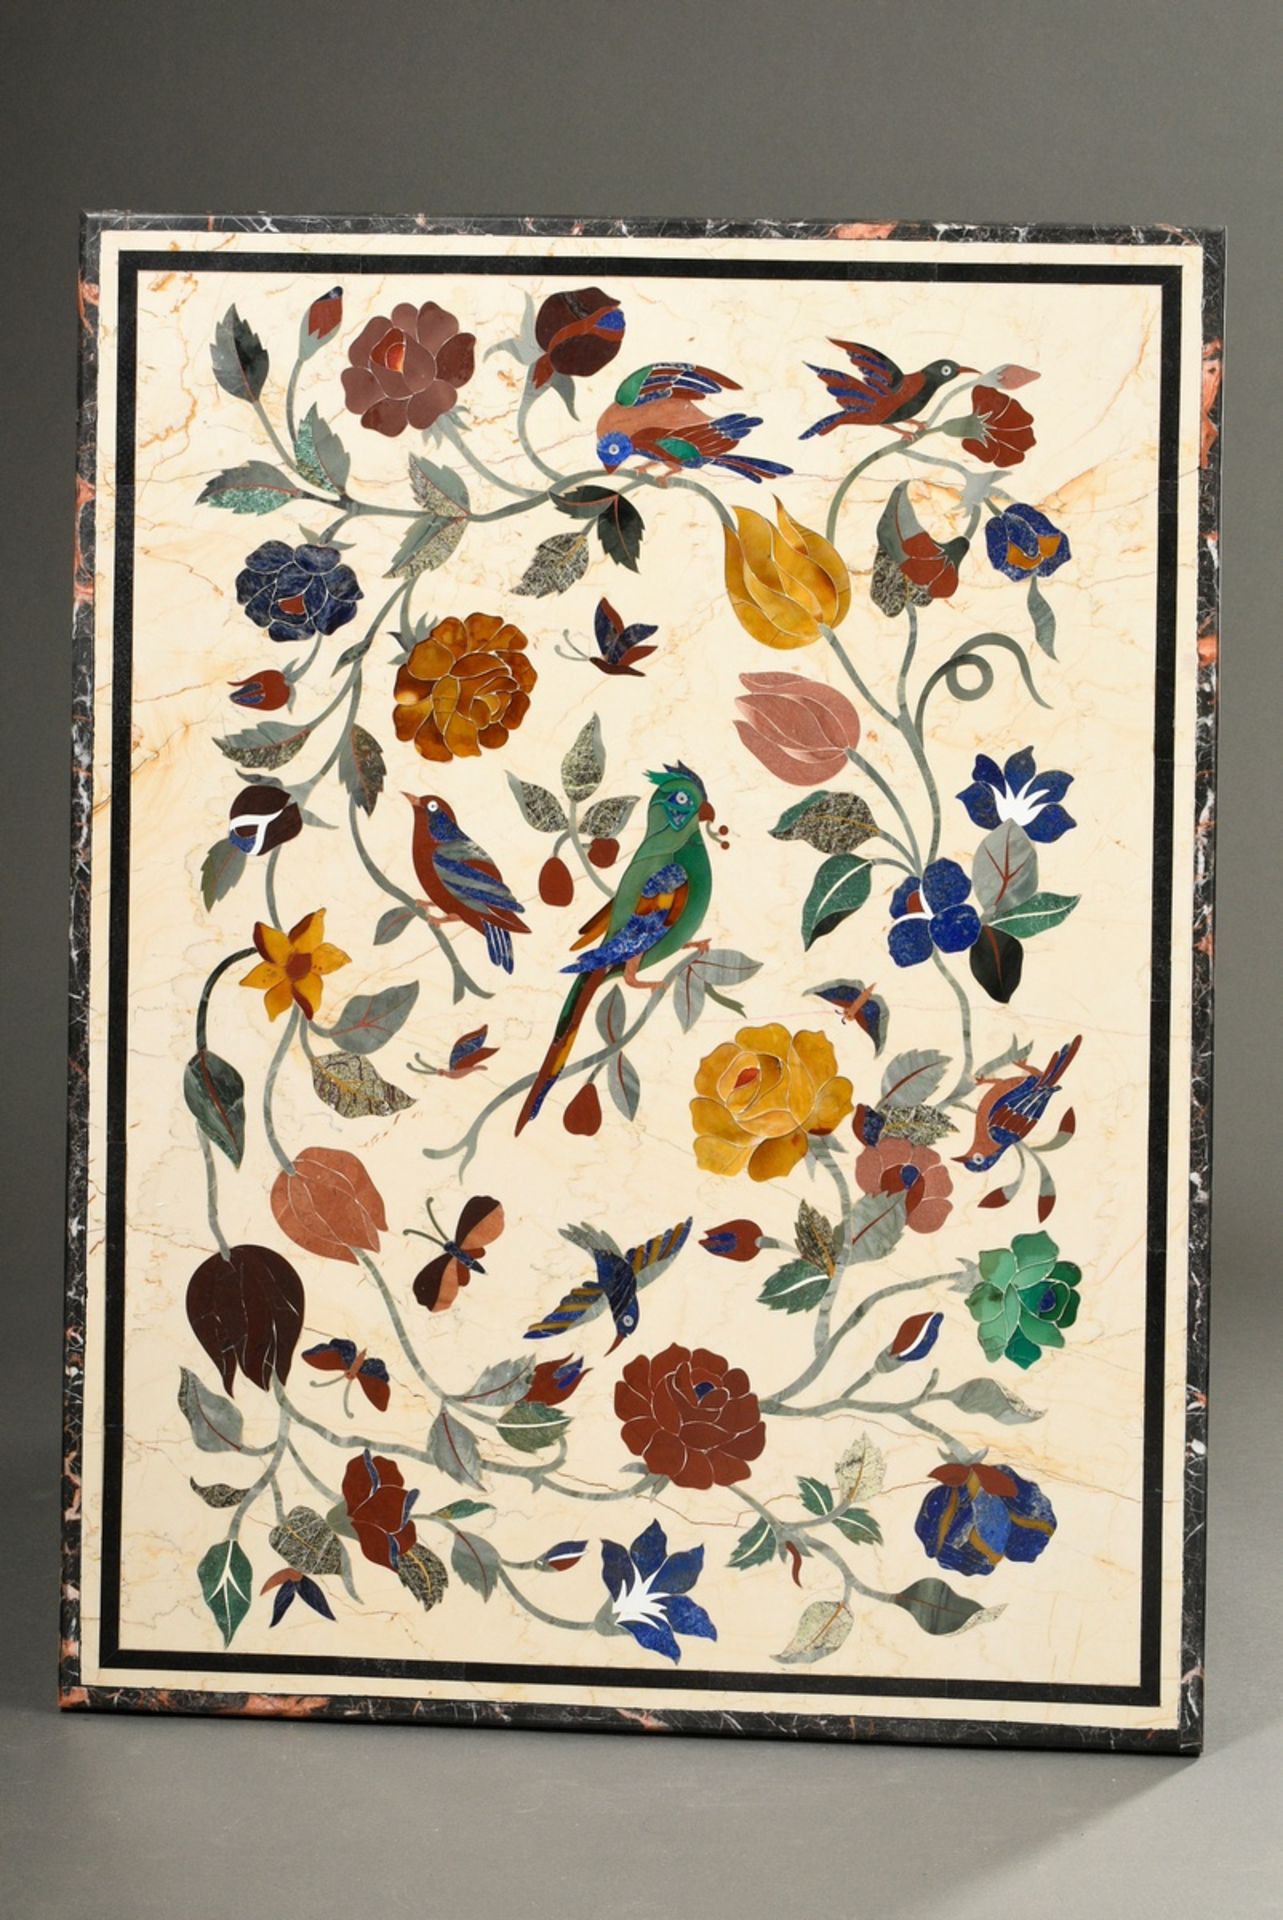 Rechteckige Tischplatte mit opulent dekorierter Pietra Dura Arbeit "Vögel in Blütenranken", verschi